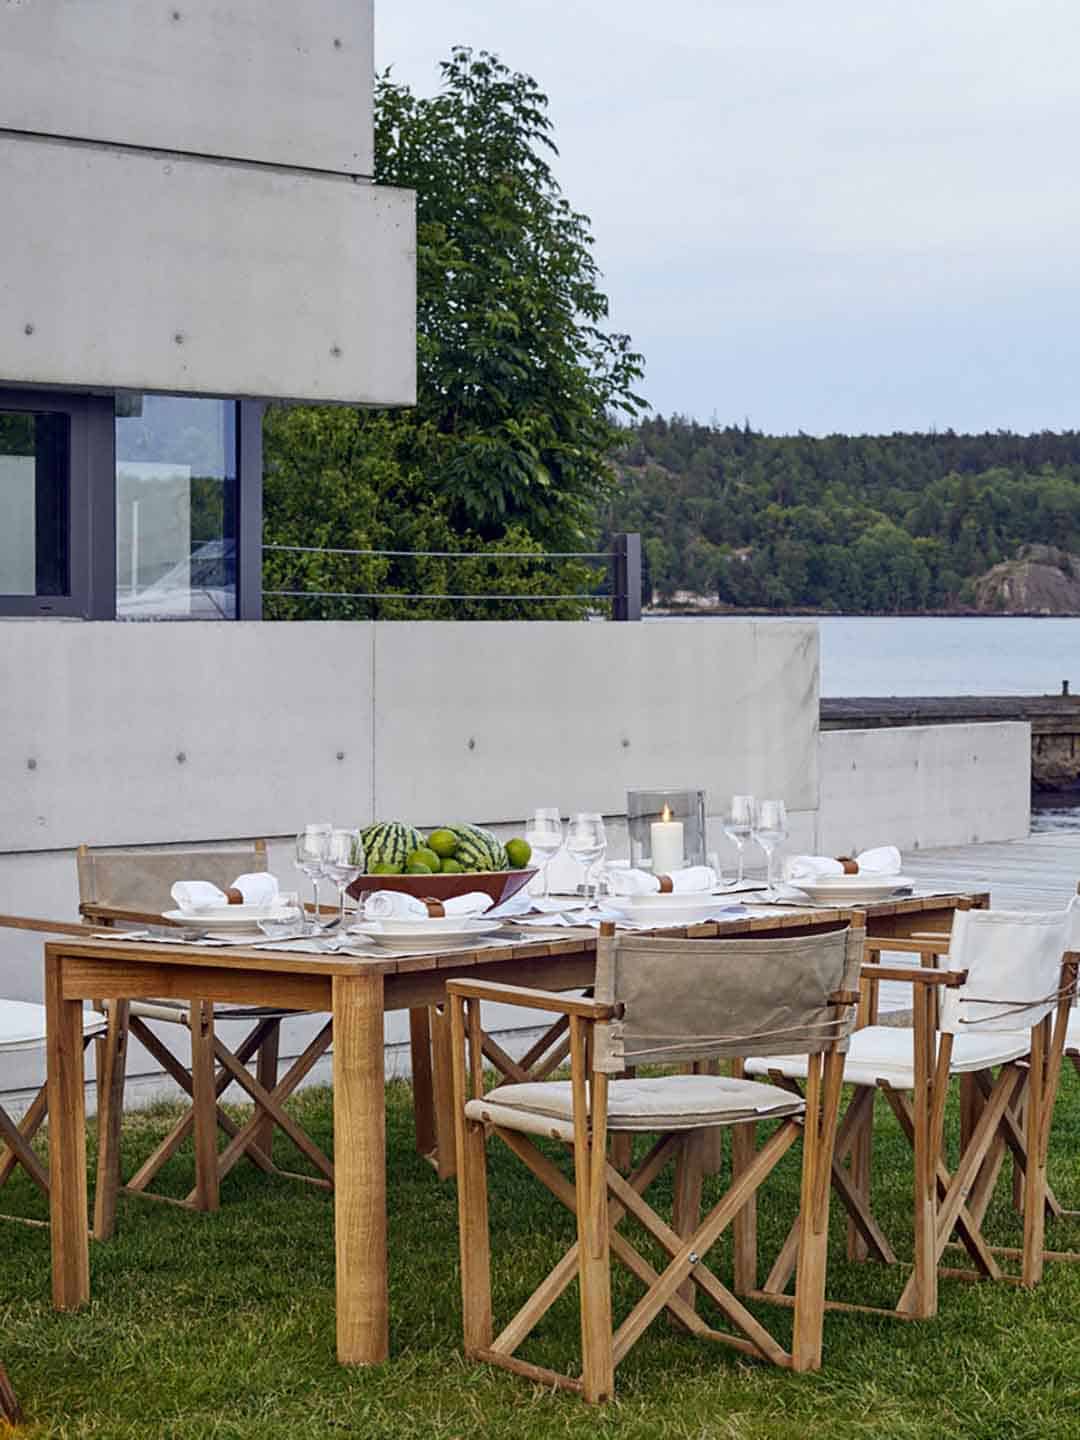 Премиальный обеденный стол Skargaarden Korsö на лужайке рядом с домом